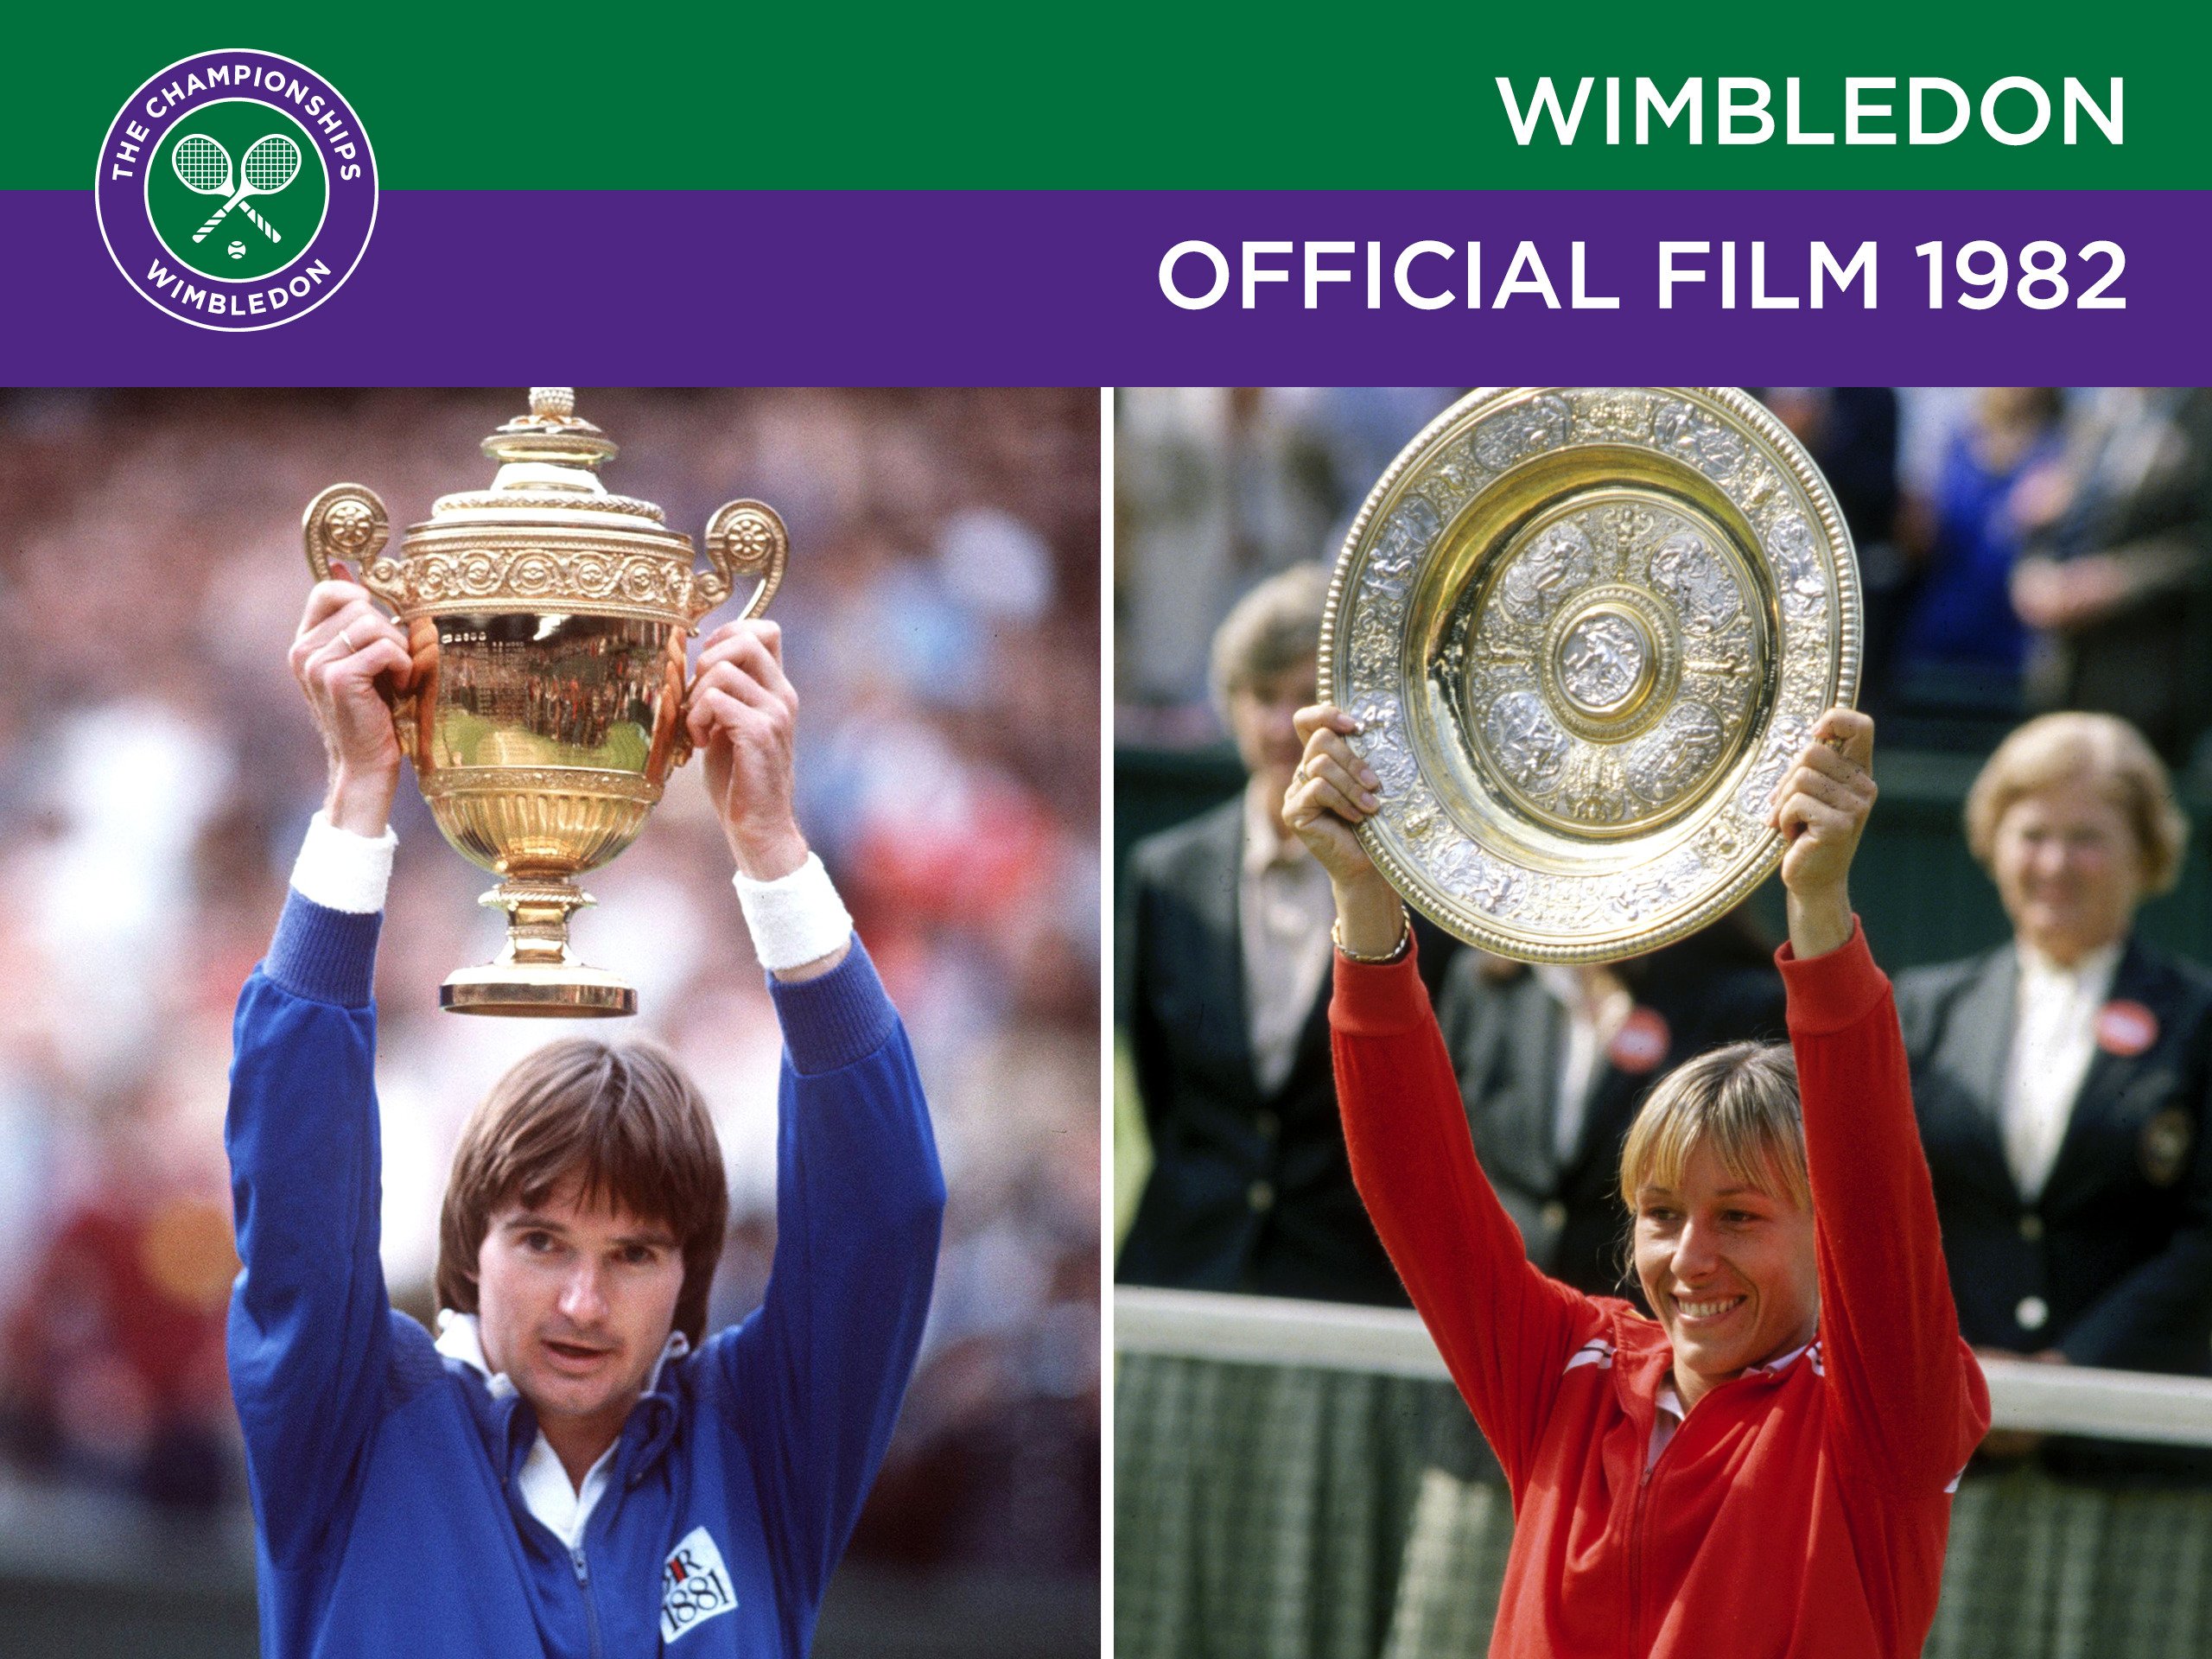 Wimbledon Official Film 1982